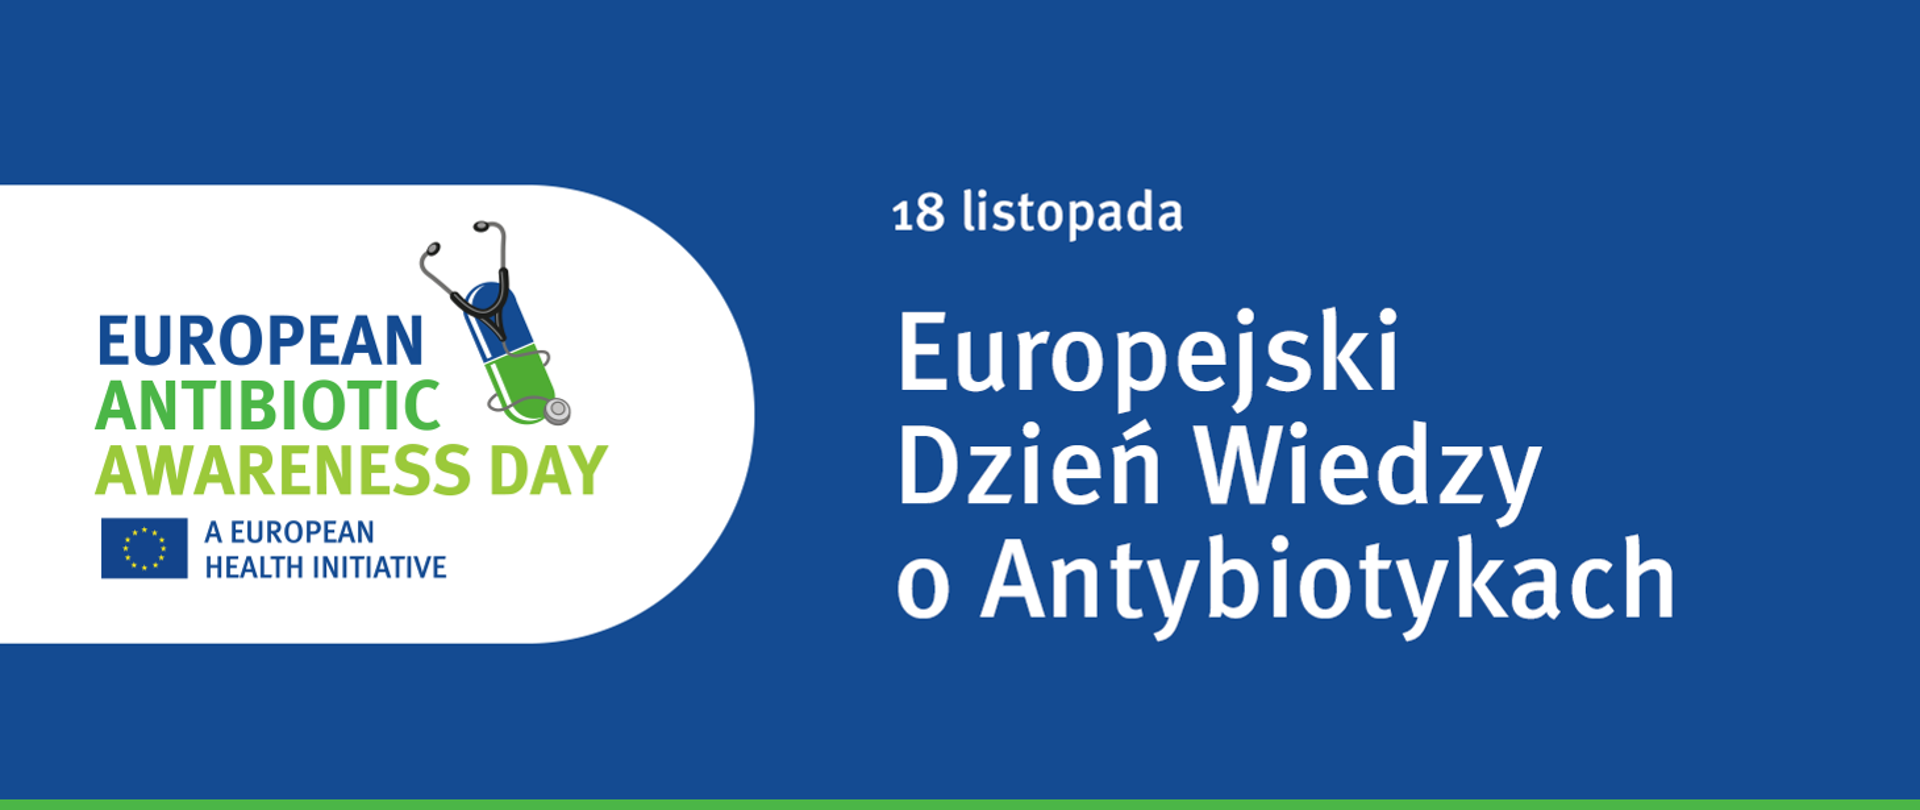 18 listopada obchodzimy Europejski Dzień Wiedzy o Antybiotykach